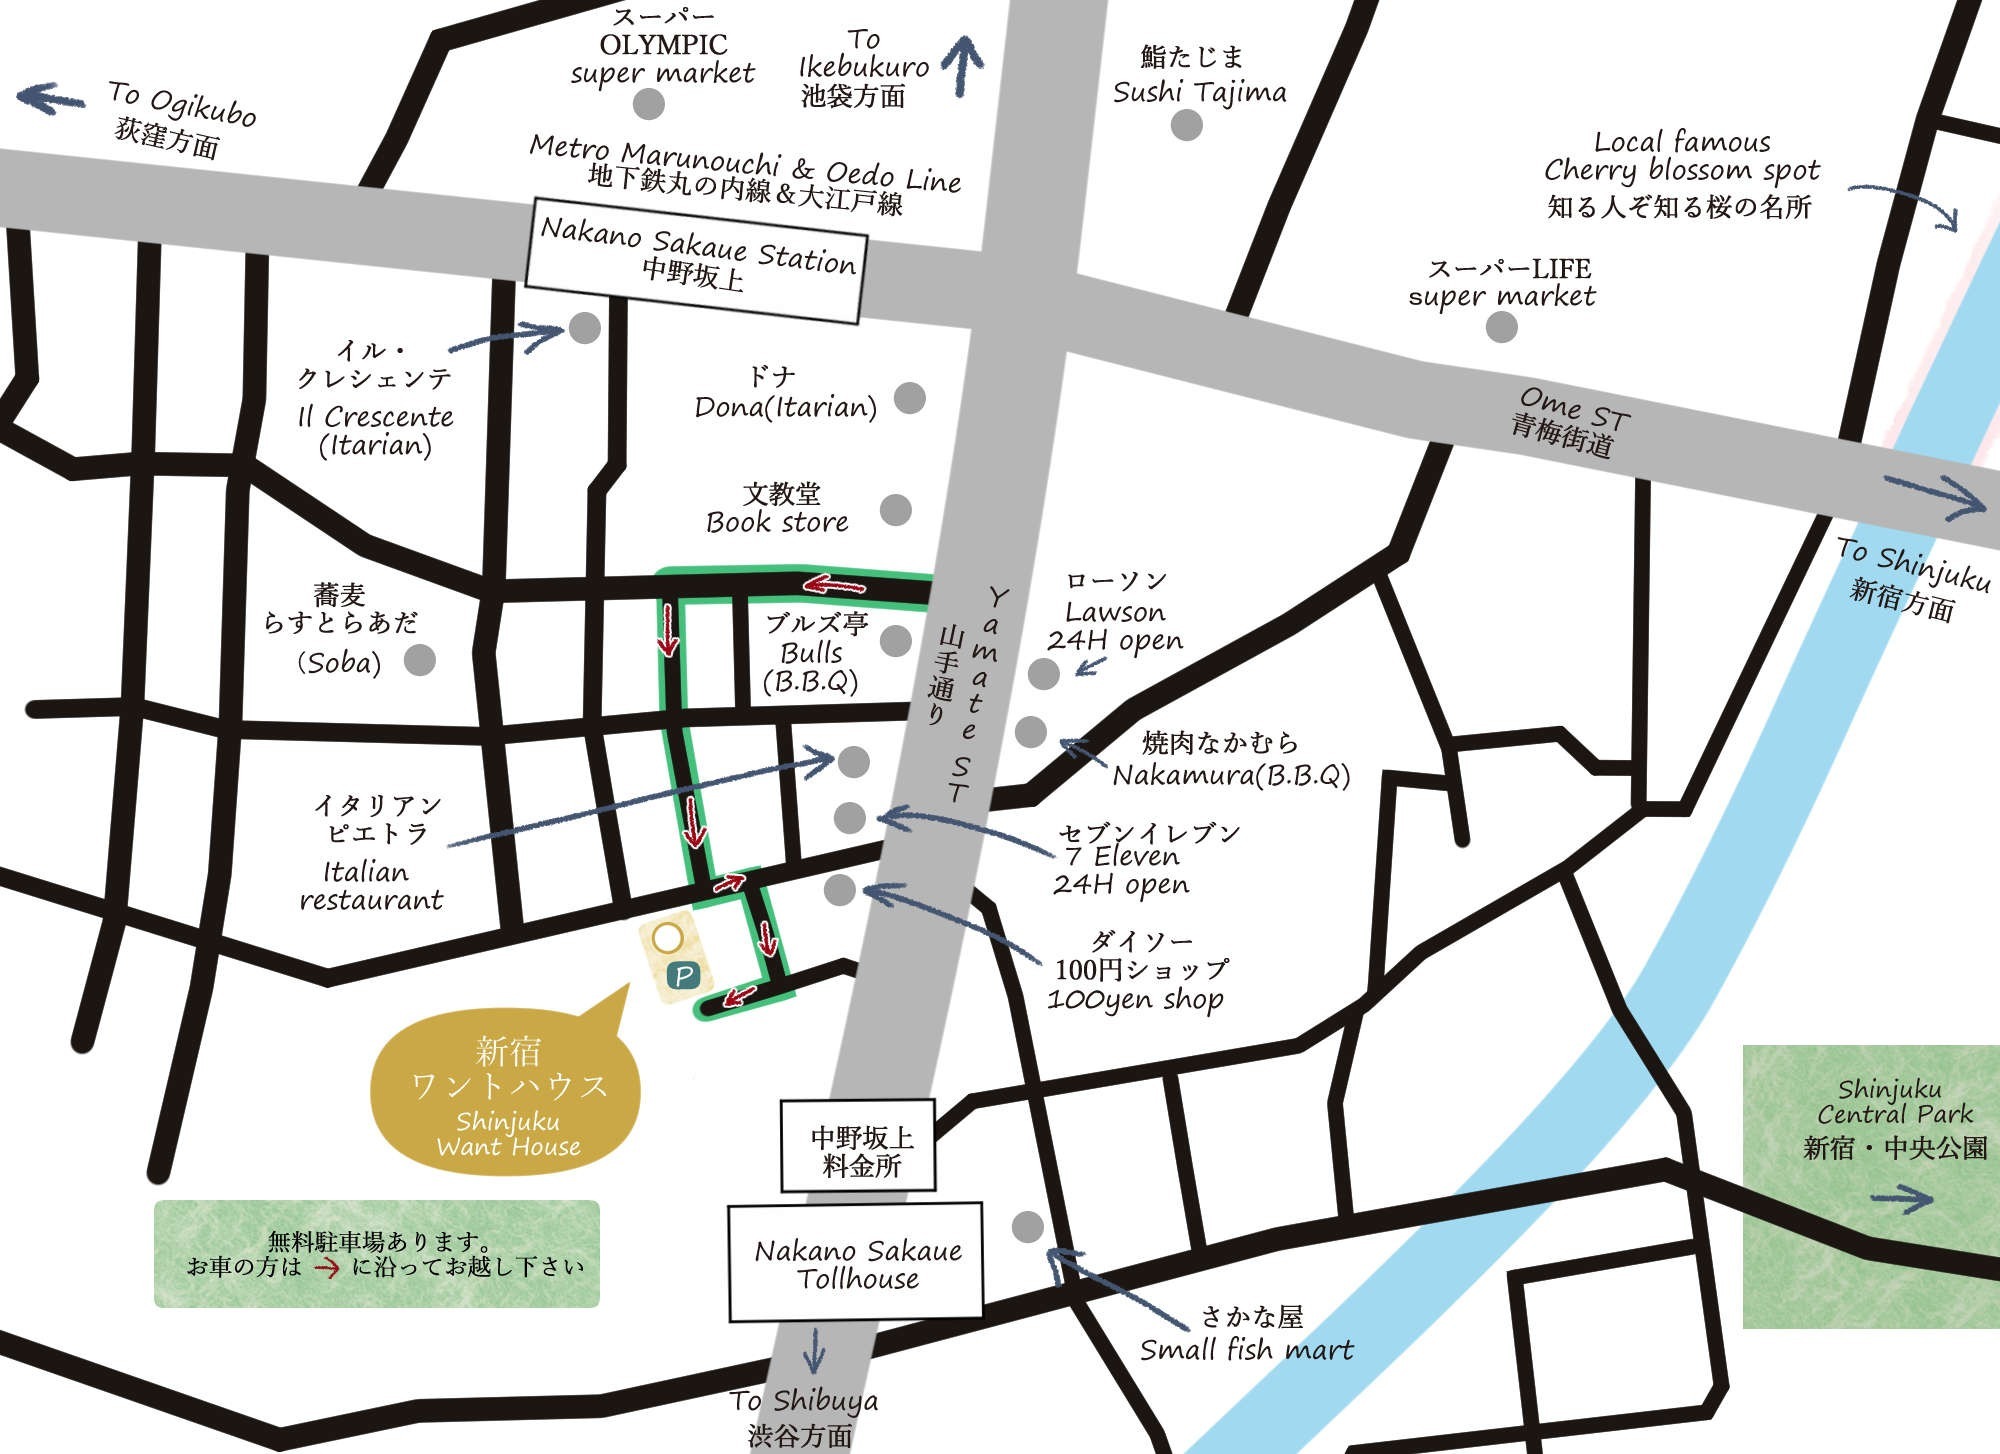 最寄りは中野坂上駅から徒歩5分。新宿まで直通5分の最高の立地!周囲にコンビニ・100均・飲食店多数!